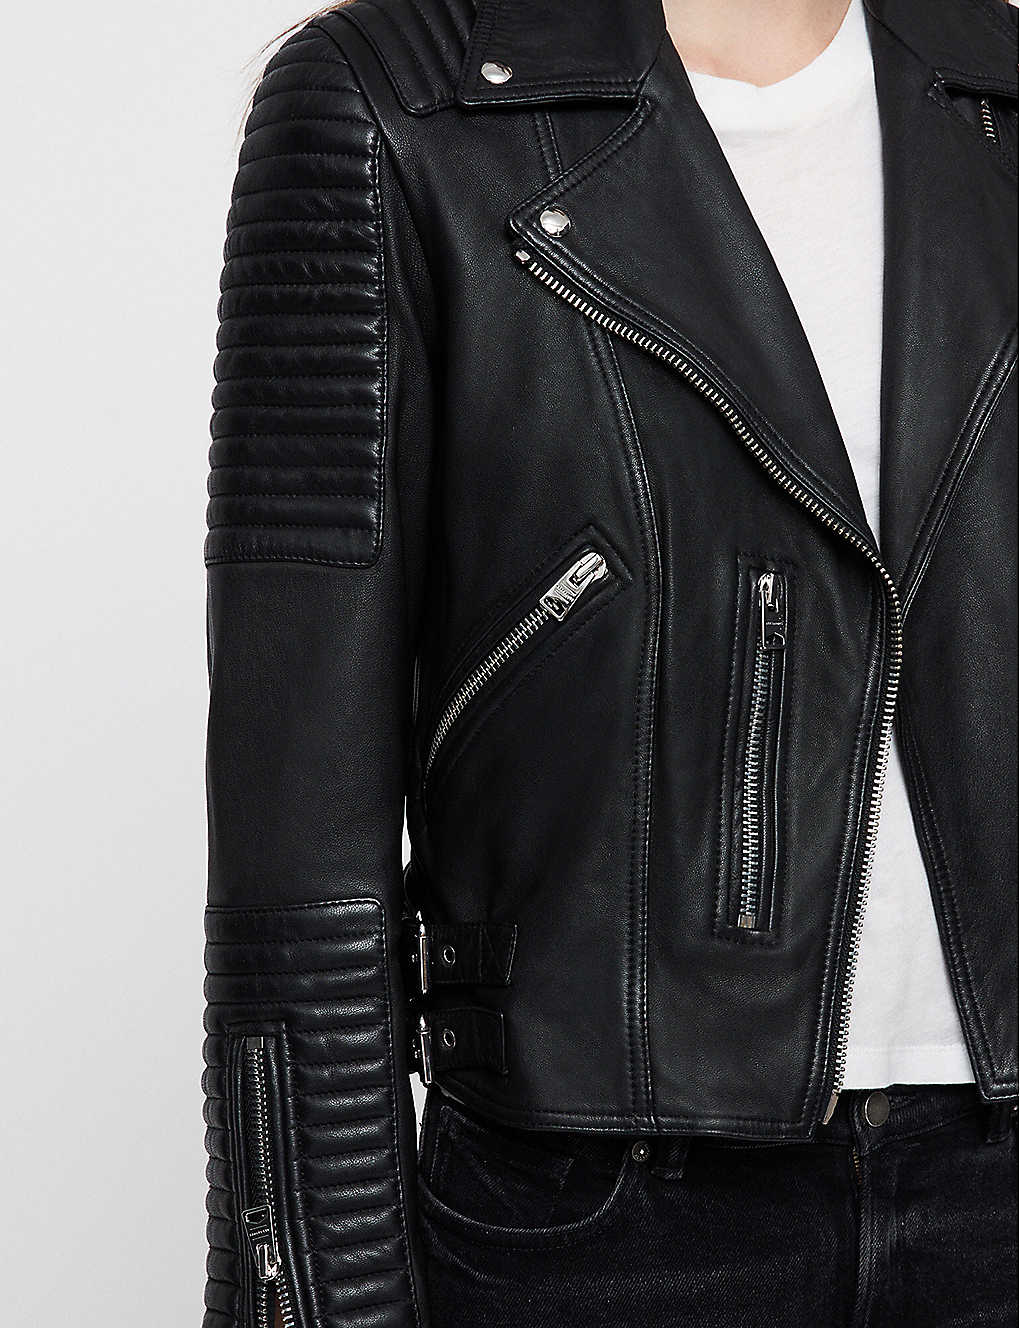 Women’s Black Leather Biker Jacket